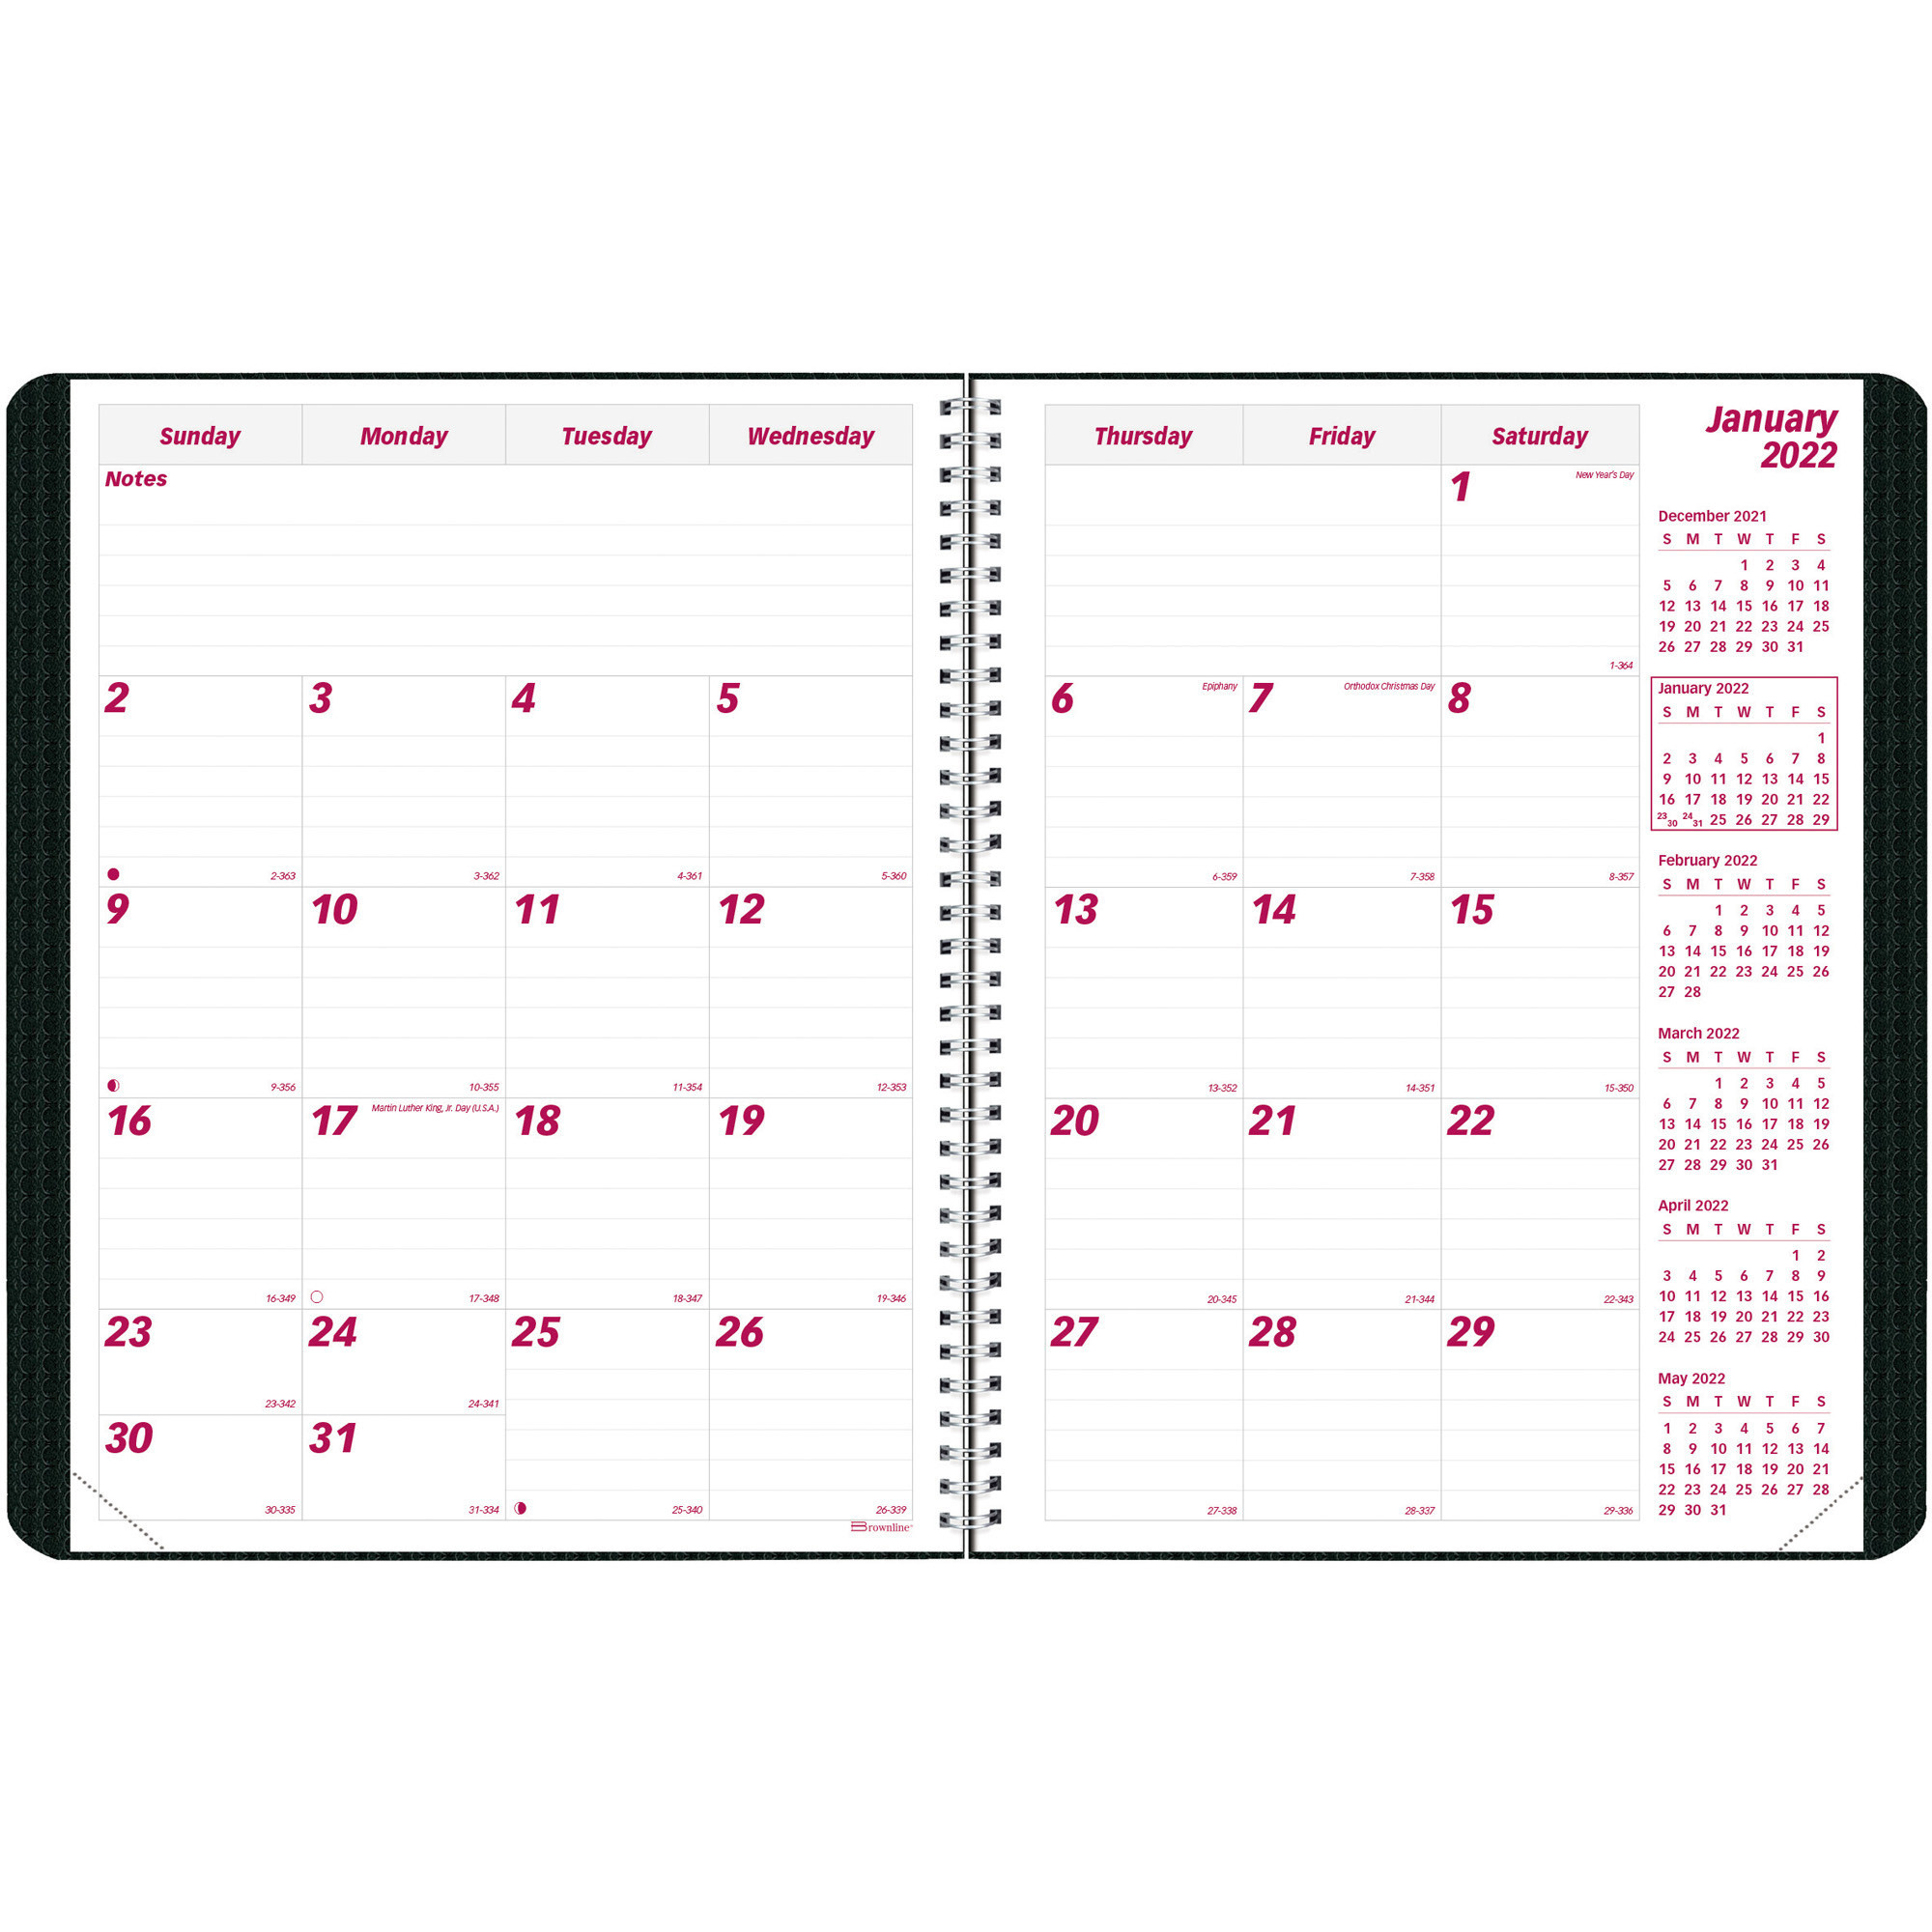 Julian Date Calendar For 2022 | Printable Calendar 2021-2022  Julian Calendar 2022 Quadax